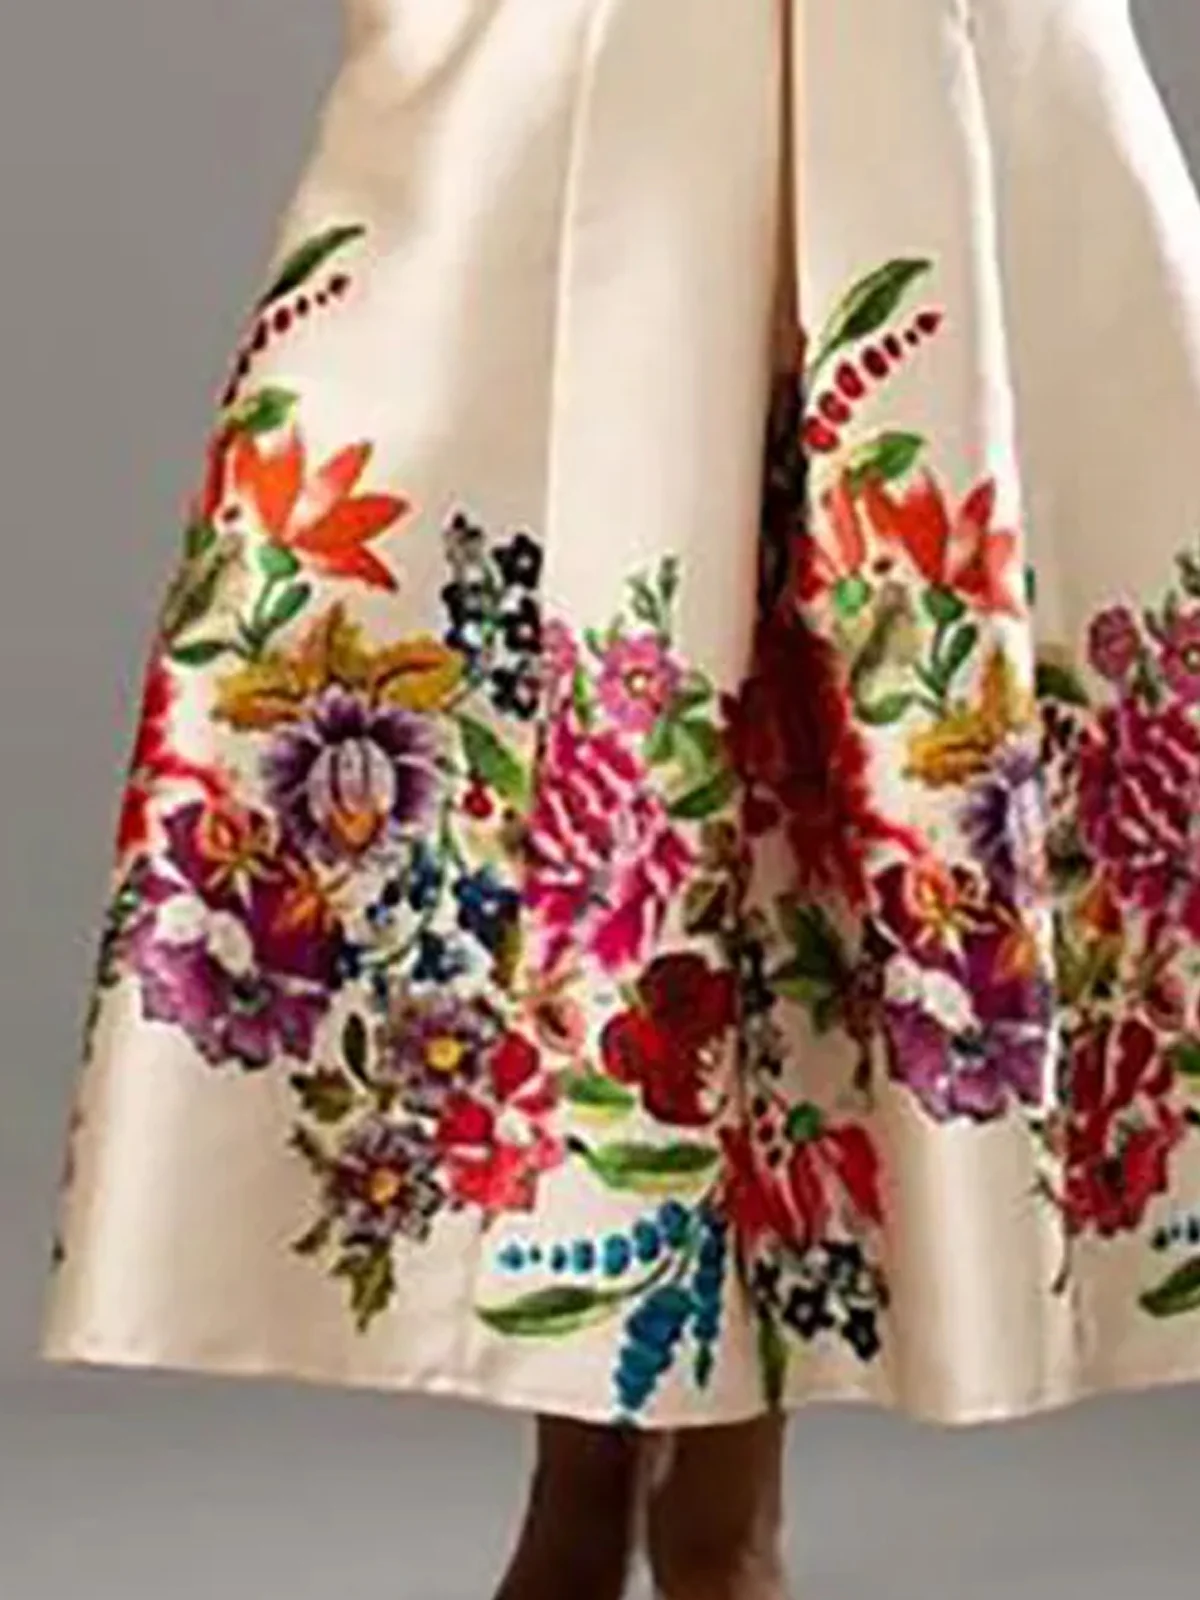 Regelmäßige Passform Geblümt Elegant Tasche Patchwork Kleid mit Nein Gürtel